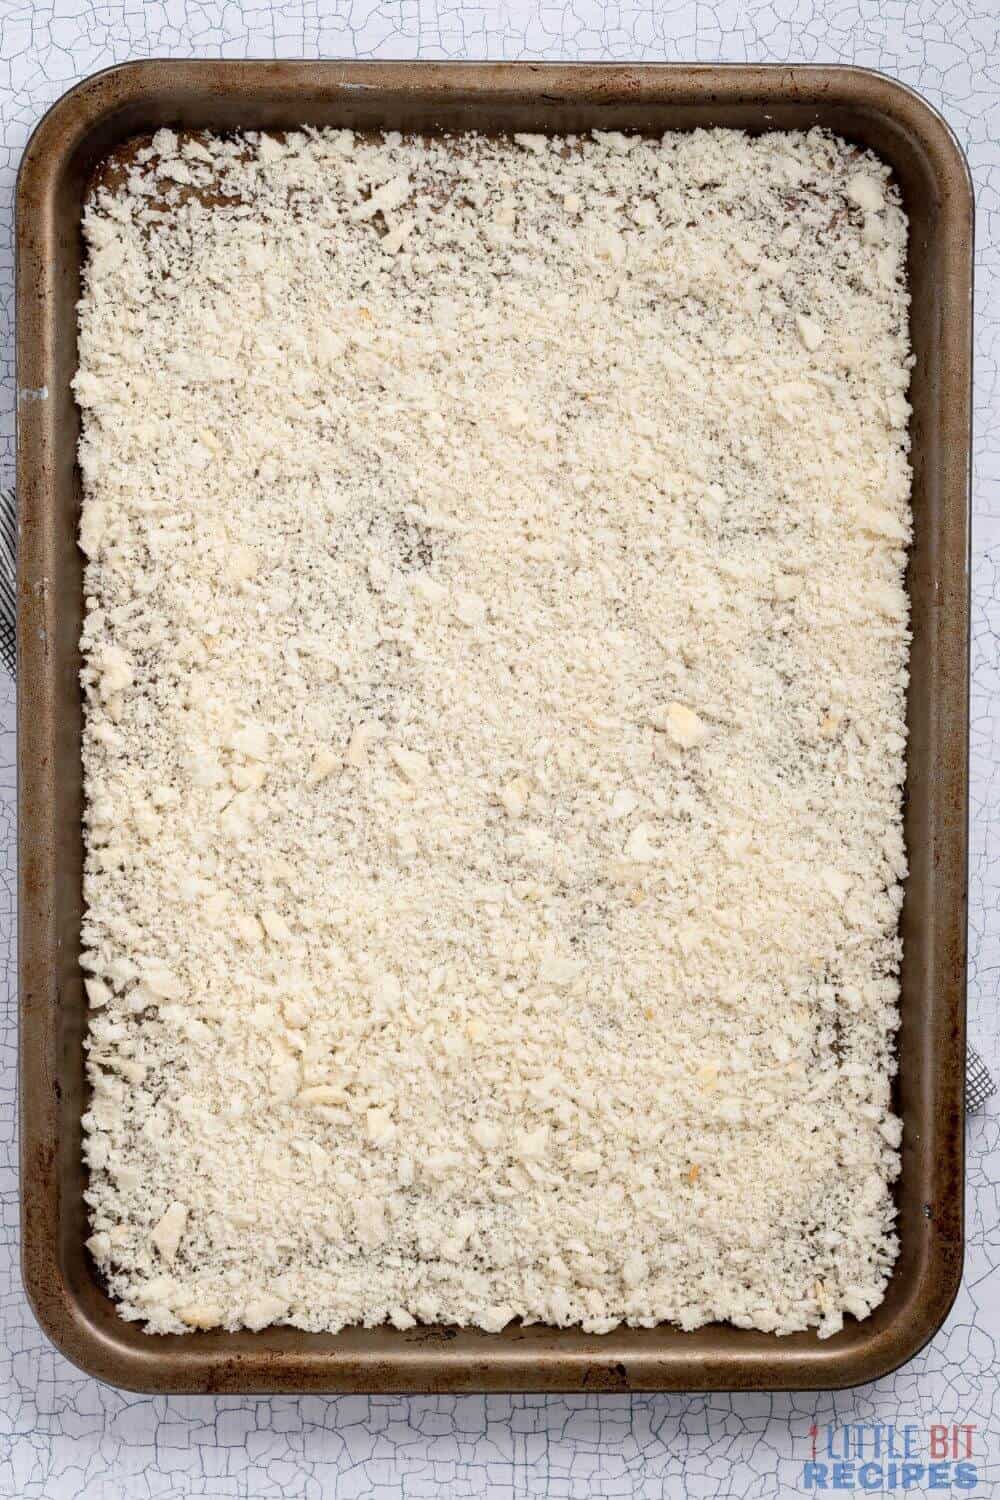 bread crumbs on baking sheet.